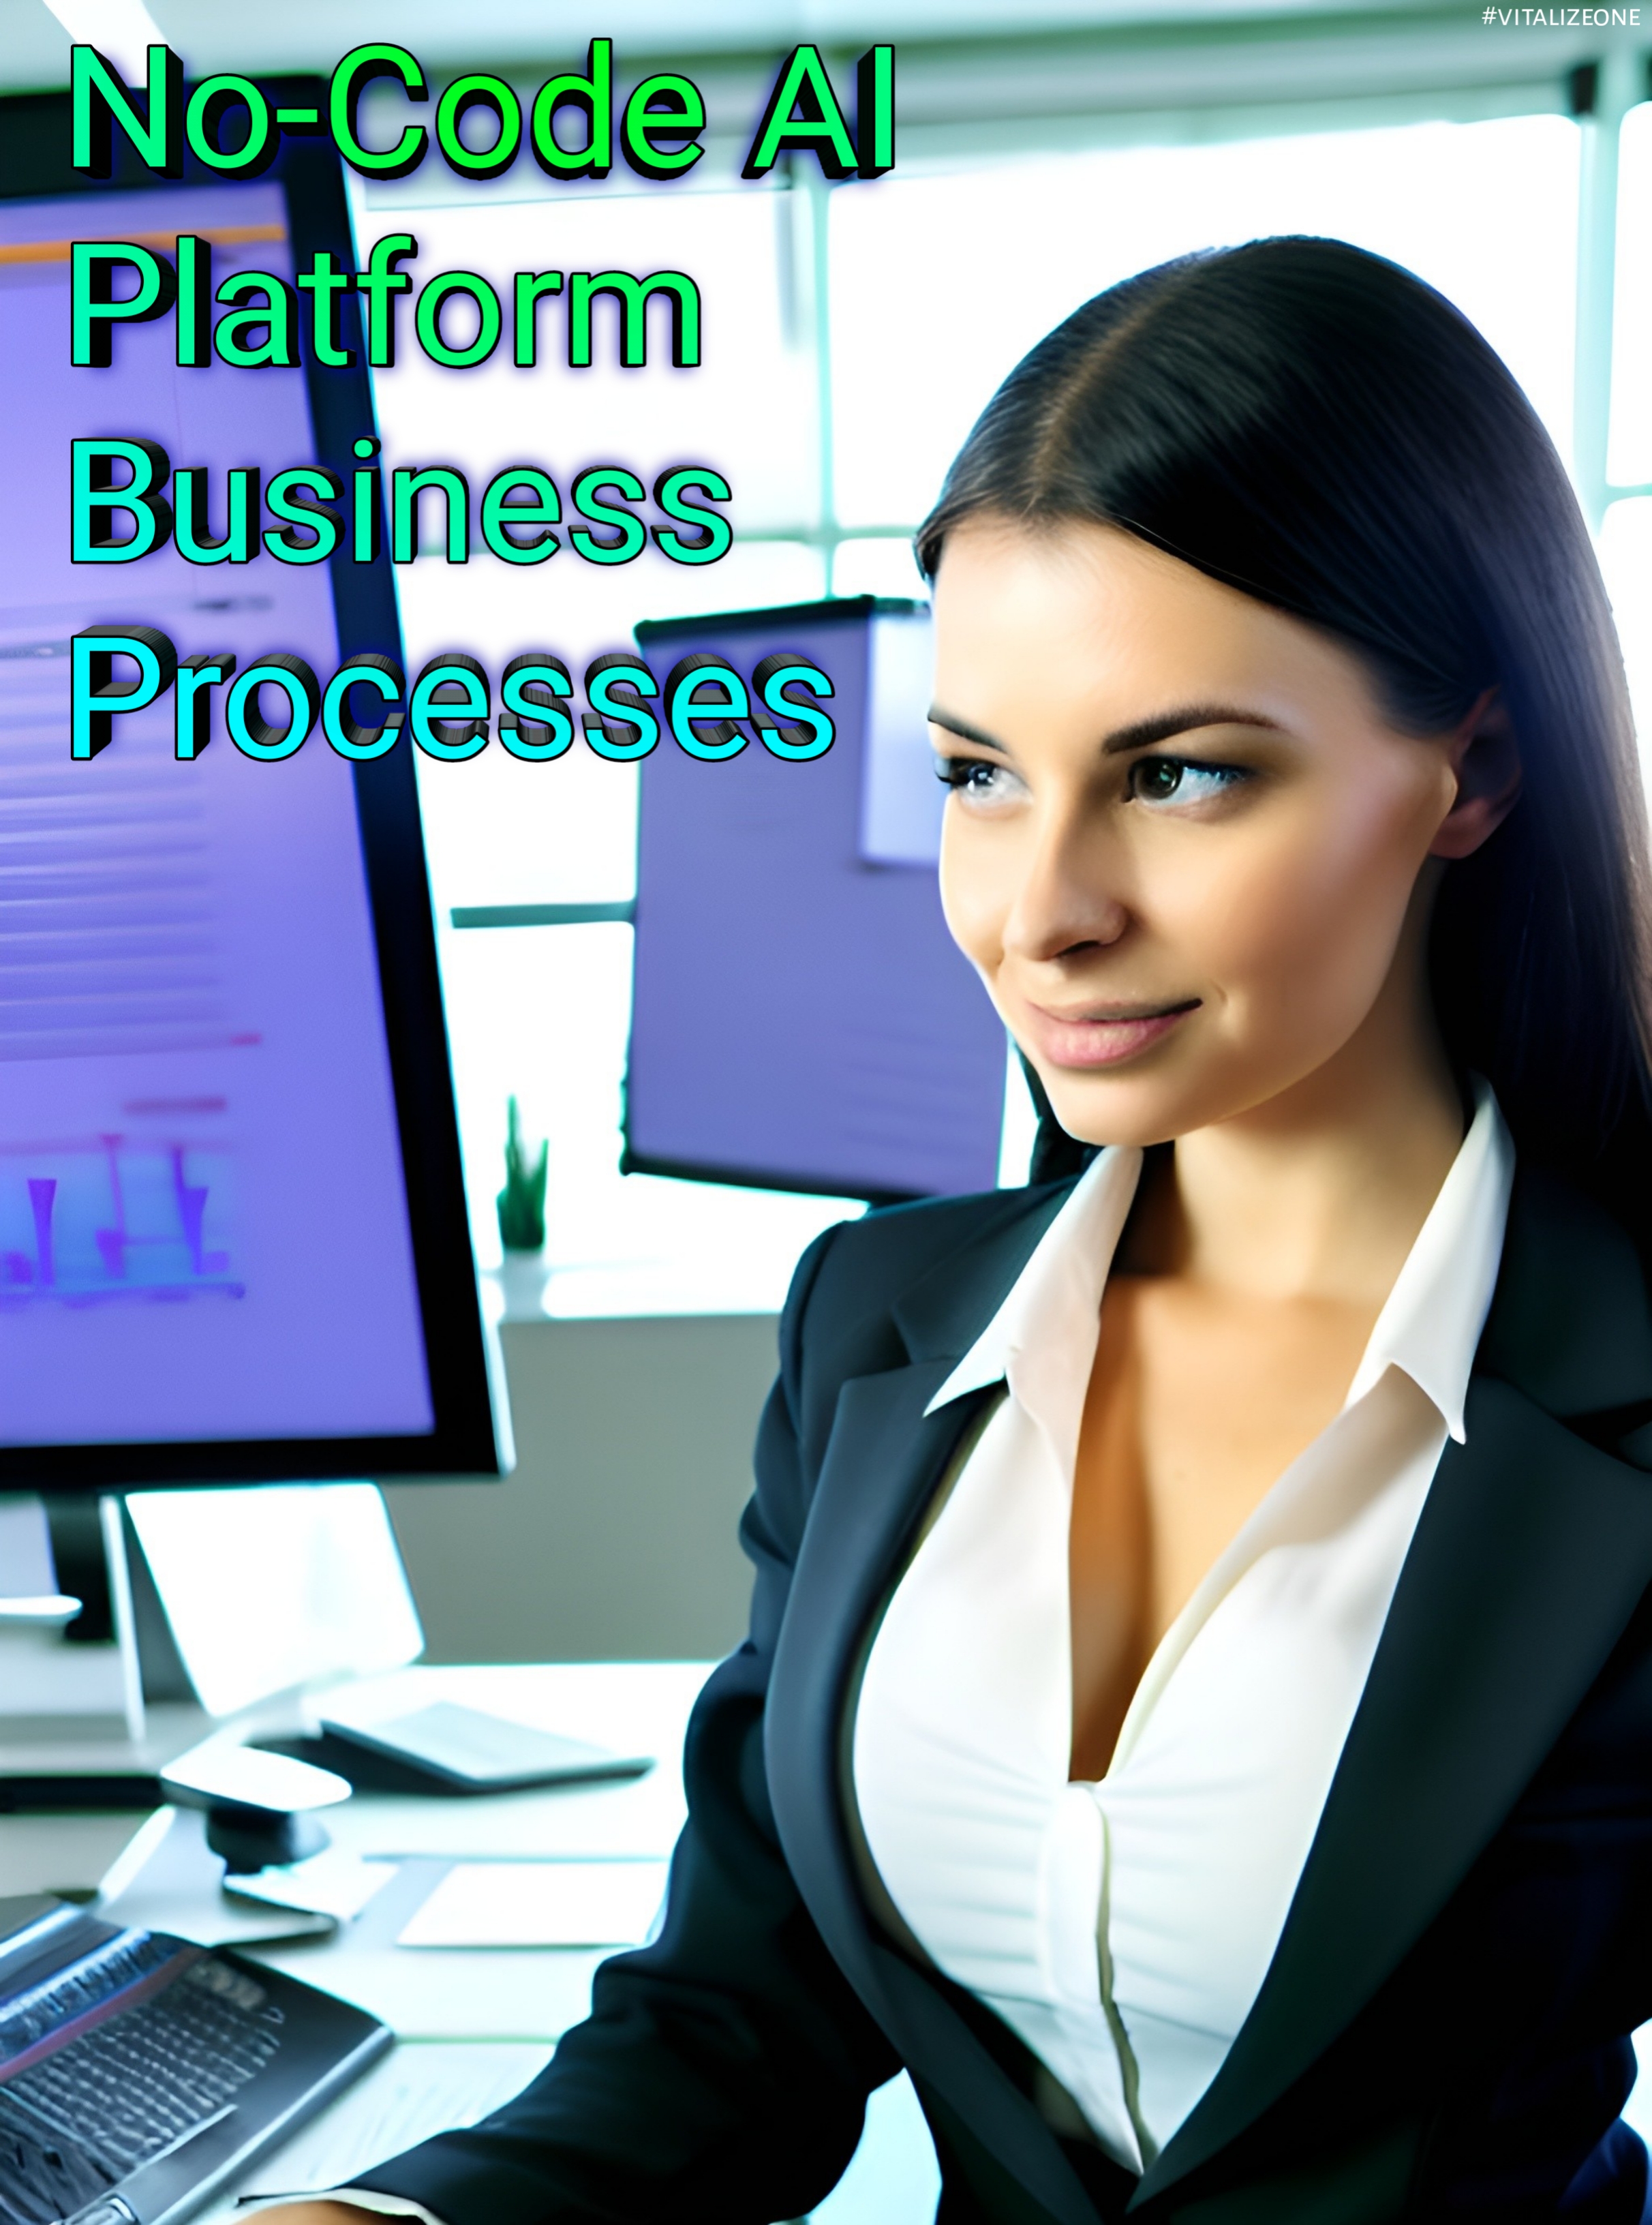 Transform Your Business Processes with a No-Code AI Platform | VitalyTennant.com | #vitalizeone 3